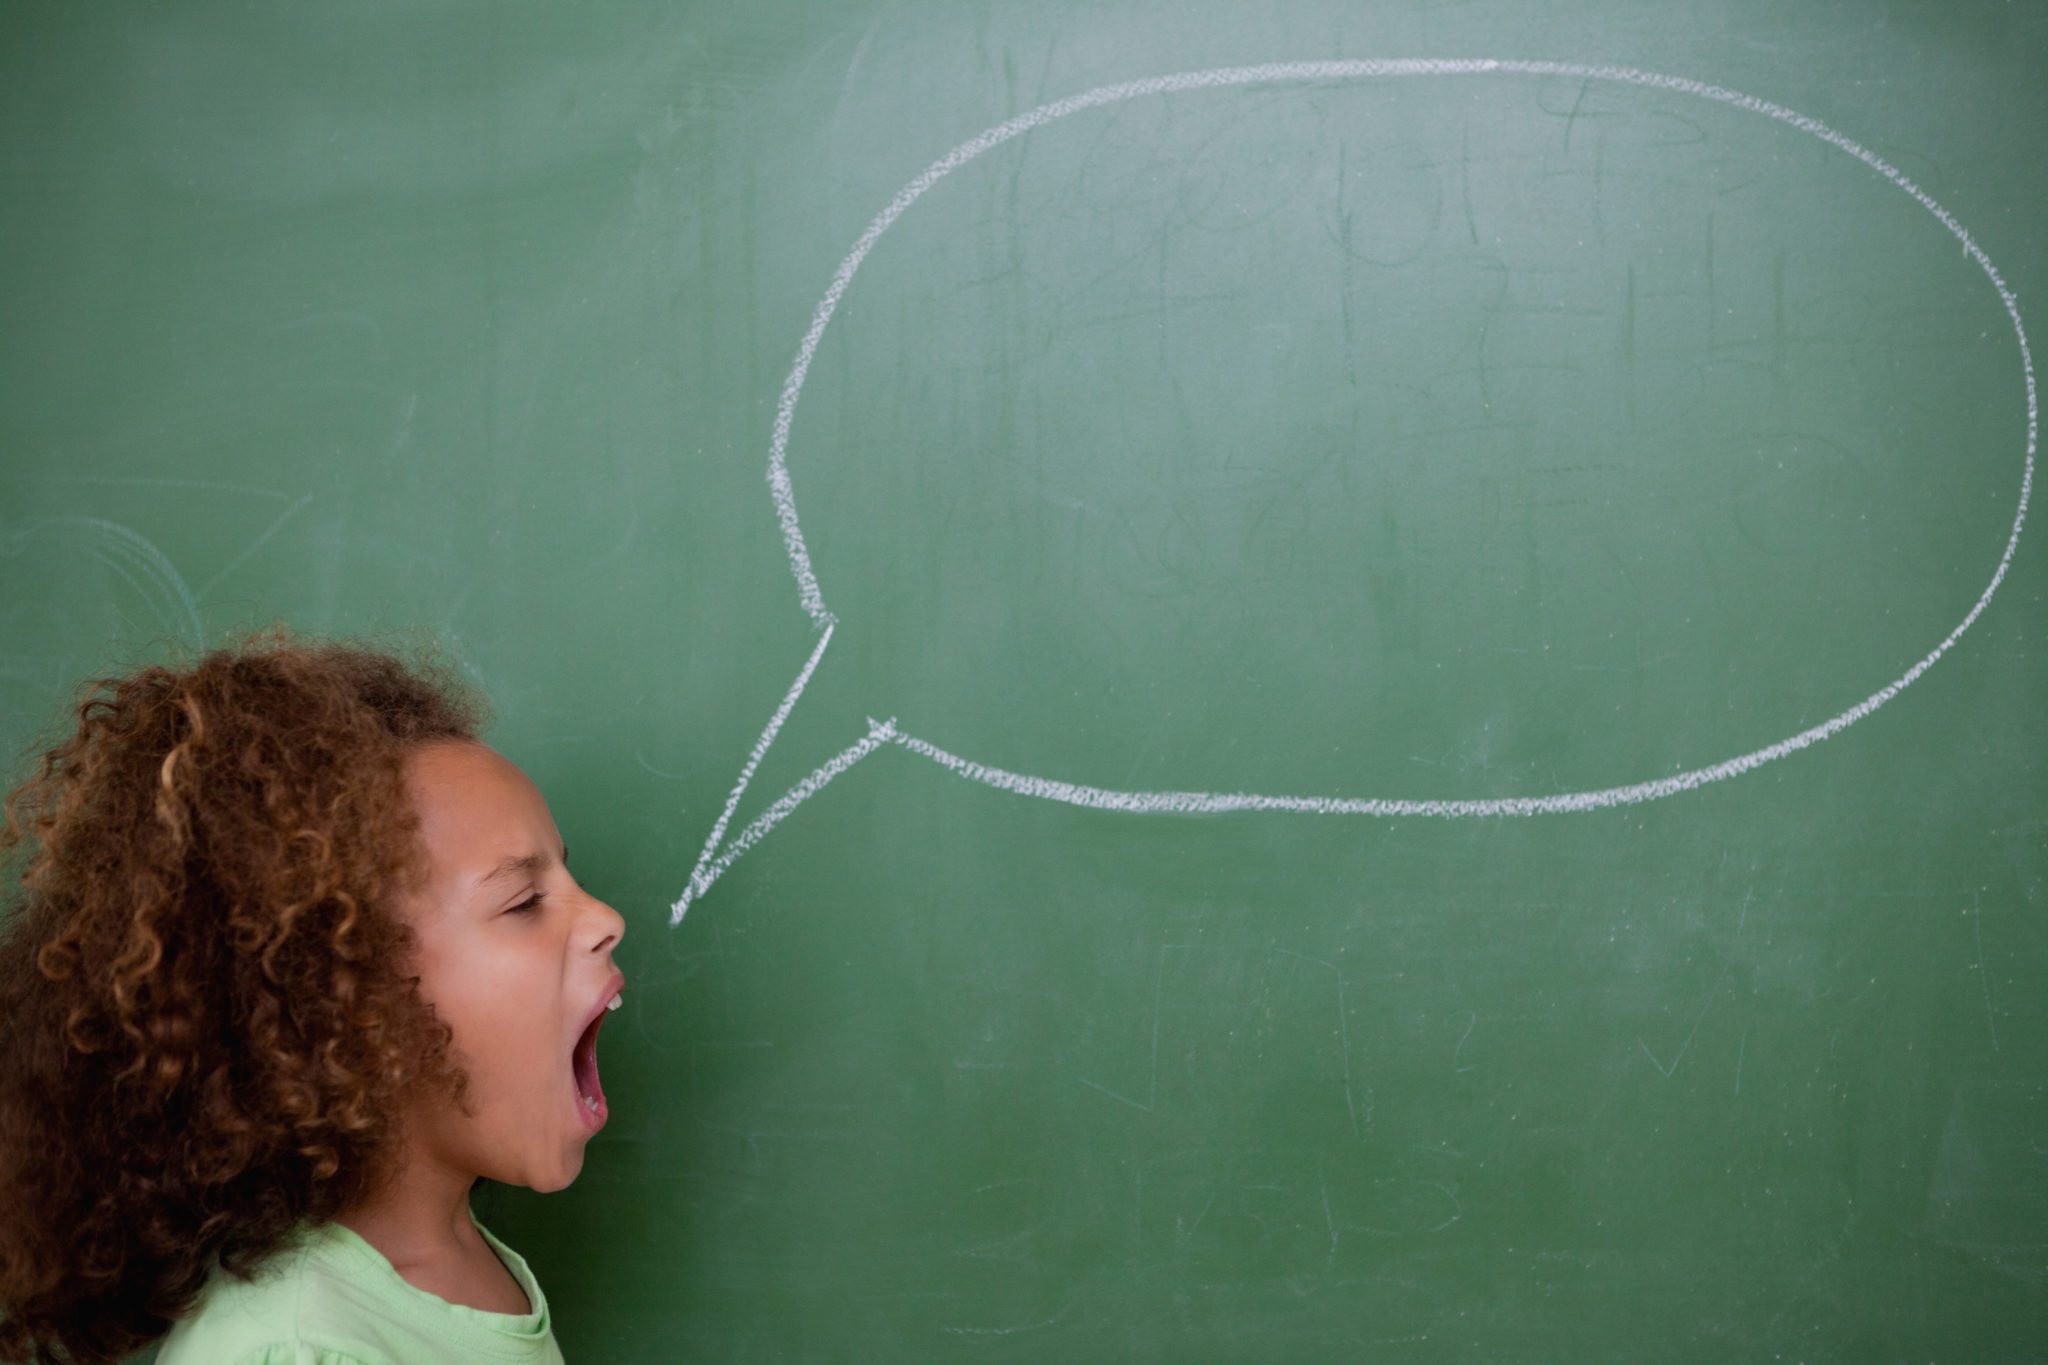 Schoolgirl screaming a speech bubble in front of a blackboard